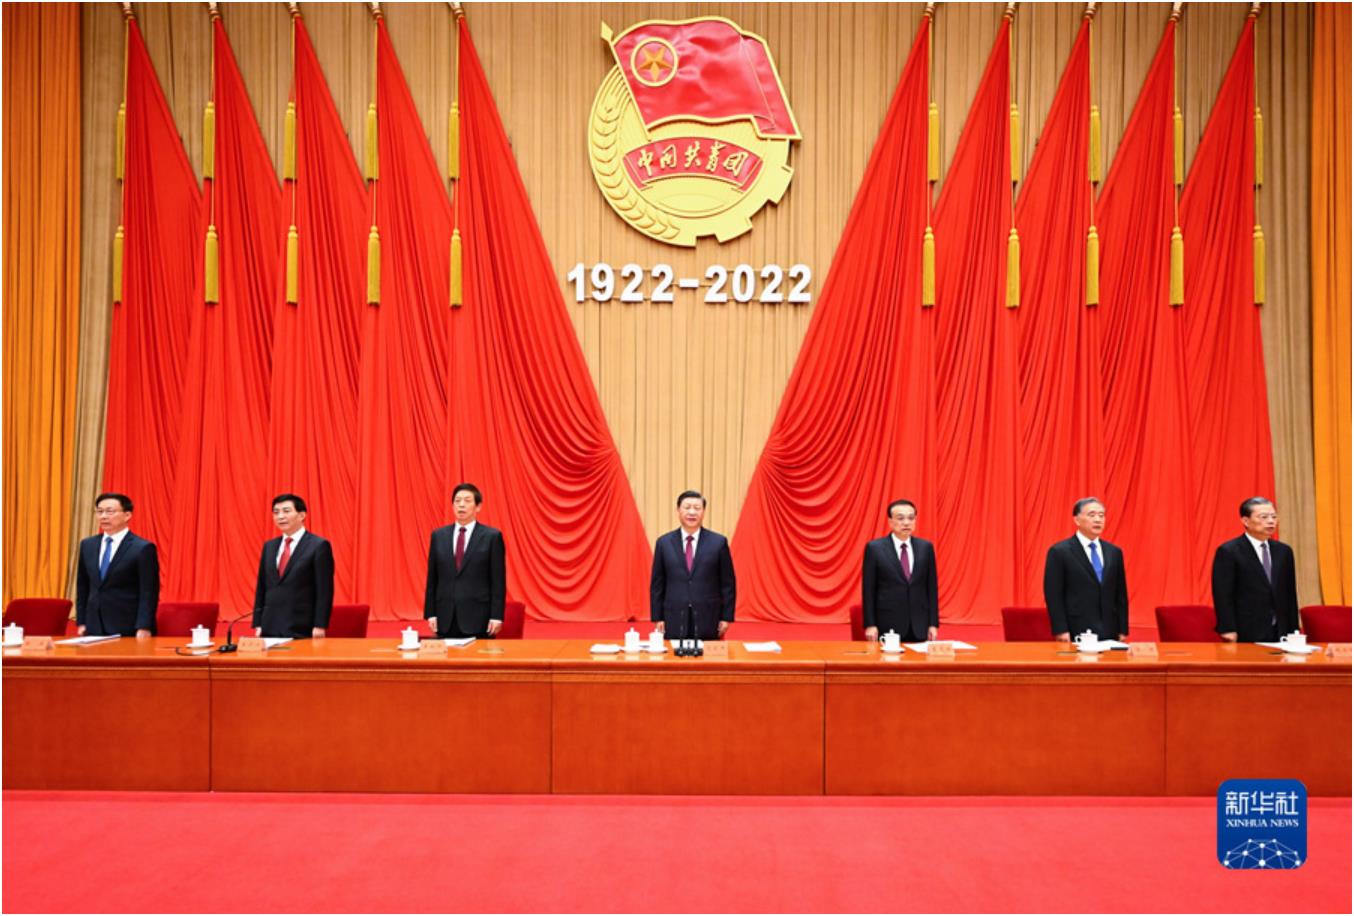 庆祝中国共产主义青年团成立100周年大会在京隆重举行<br>习近平发表重要讲话